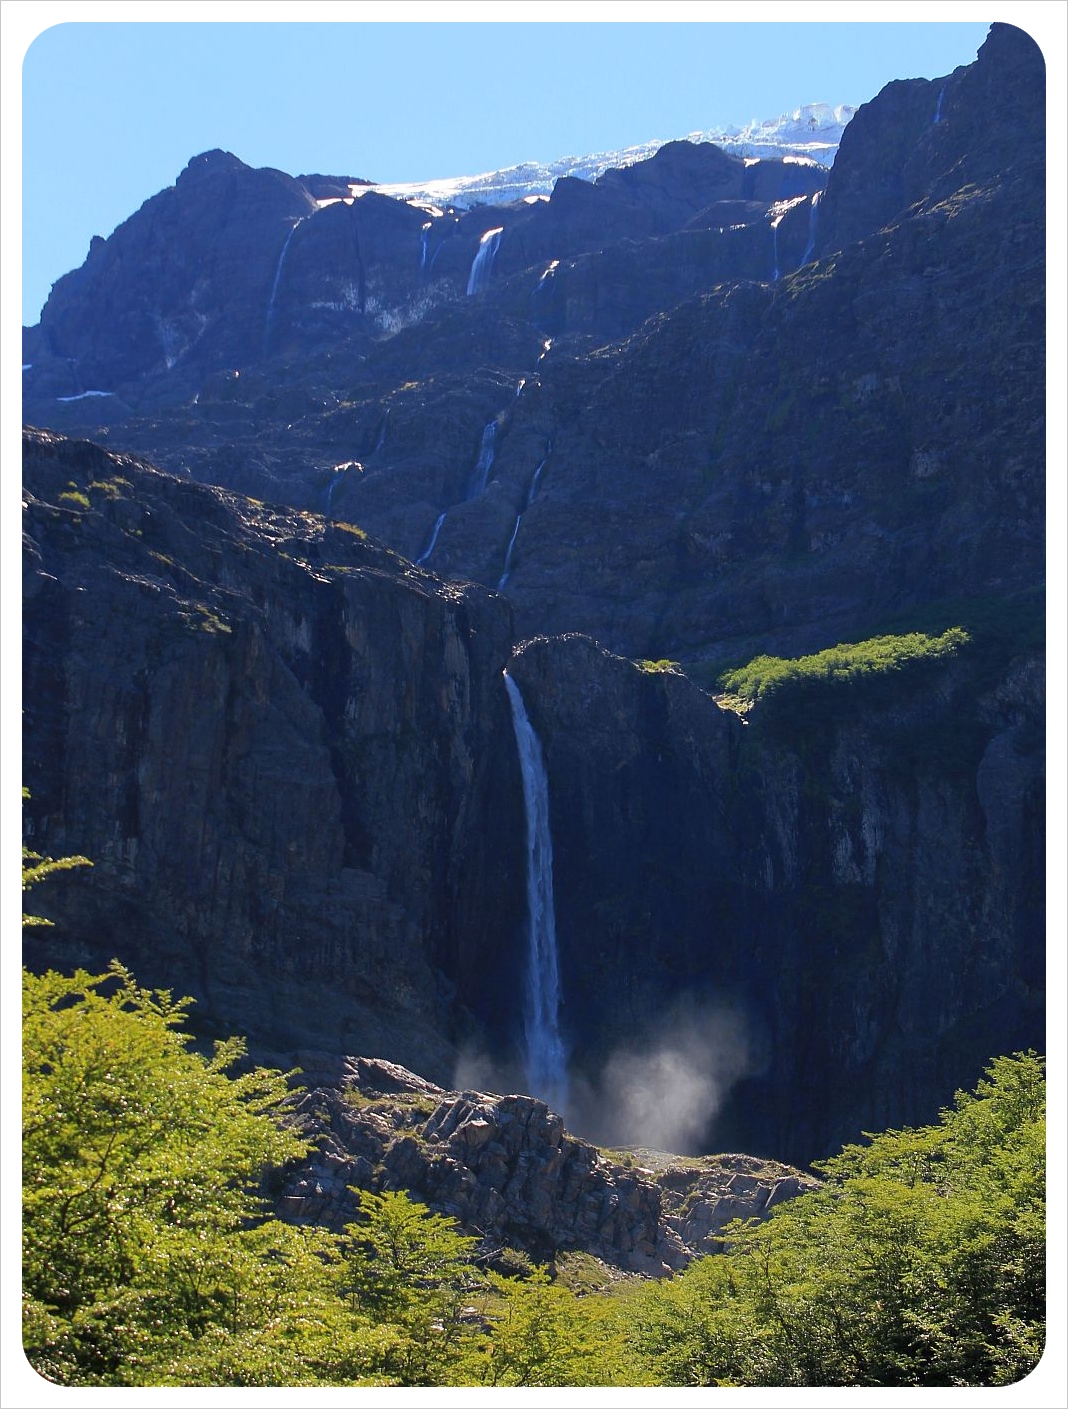 nahuel huapi national park mount tronador with waterfalls